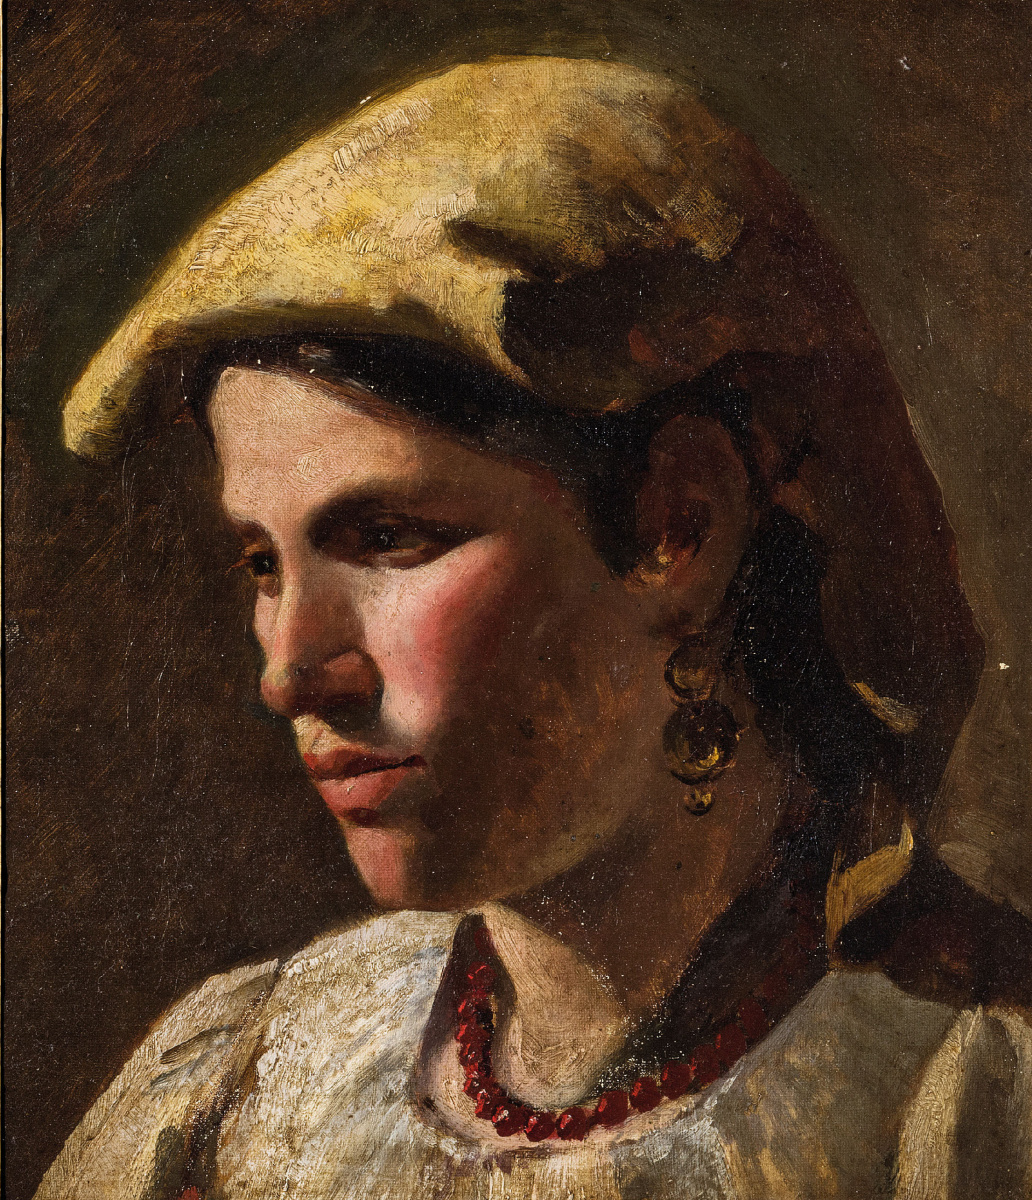 Michele Pietro Cammarano. Portrait of a peasant woman